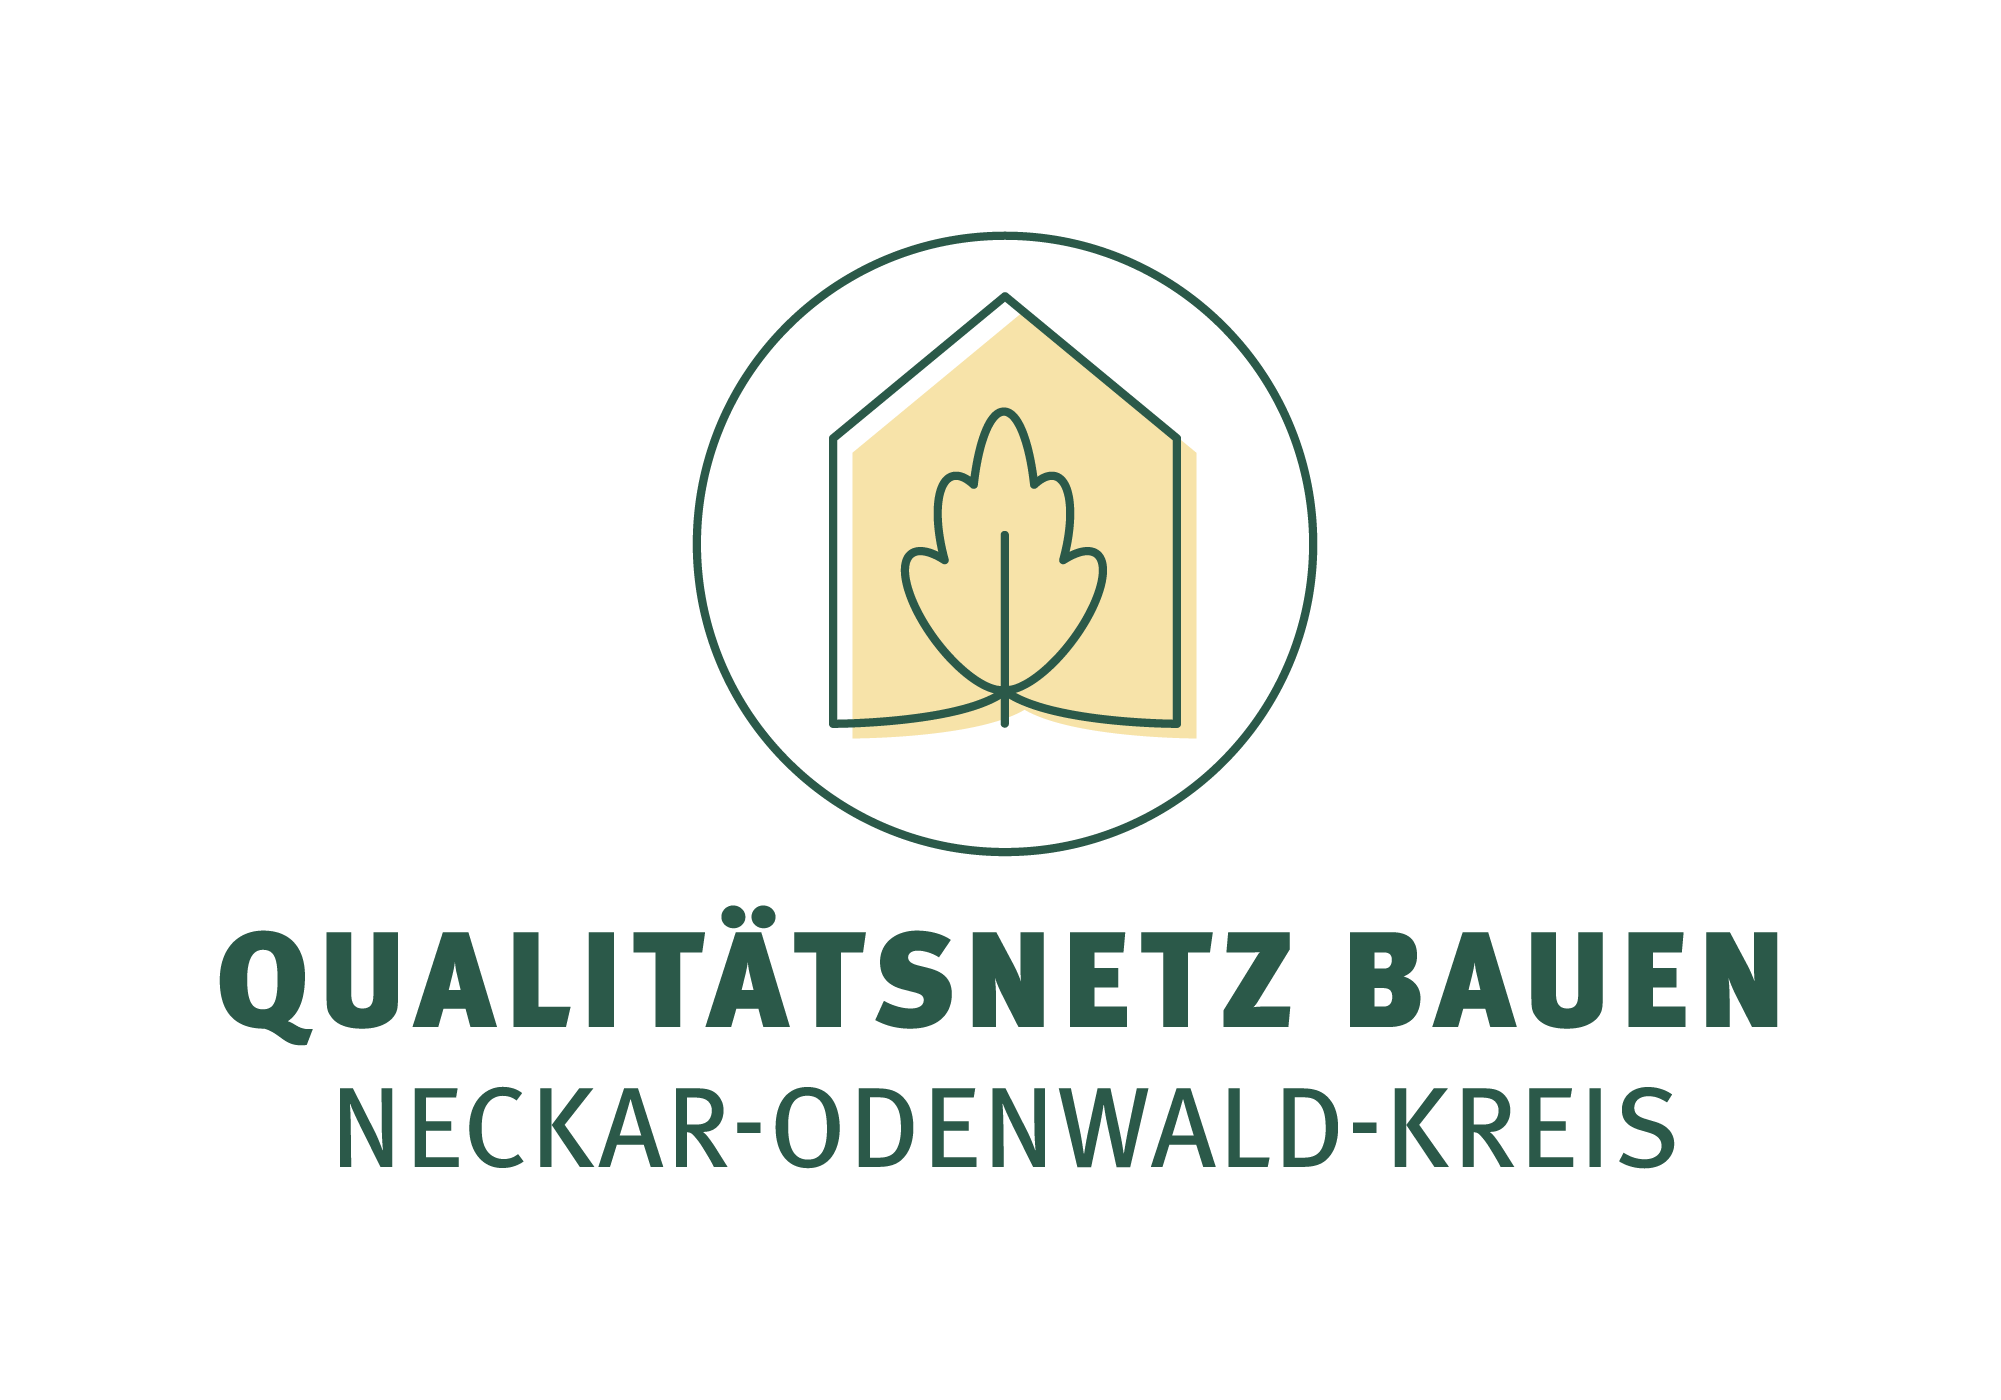 Qualitätsnetz Bauen Neckar-Odenwald